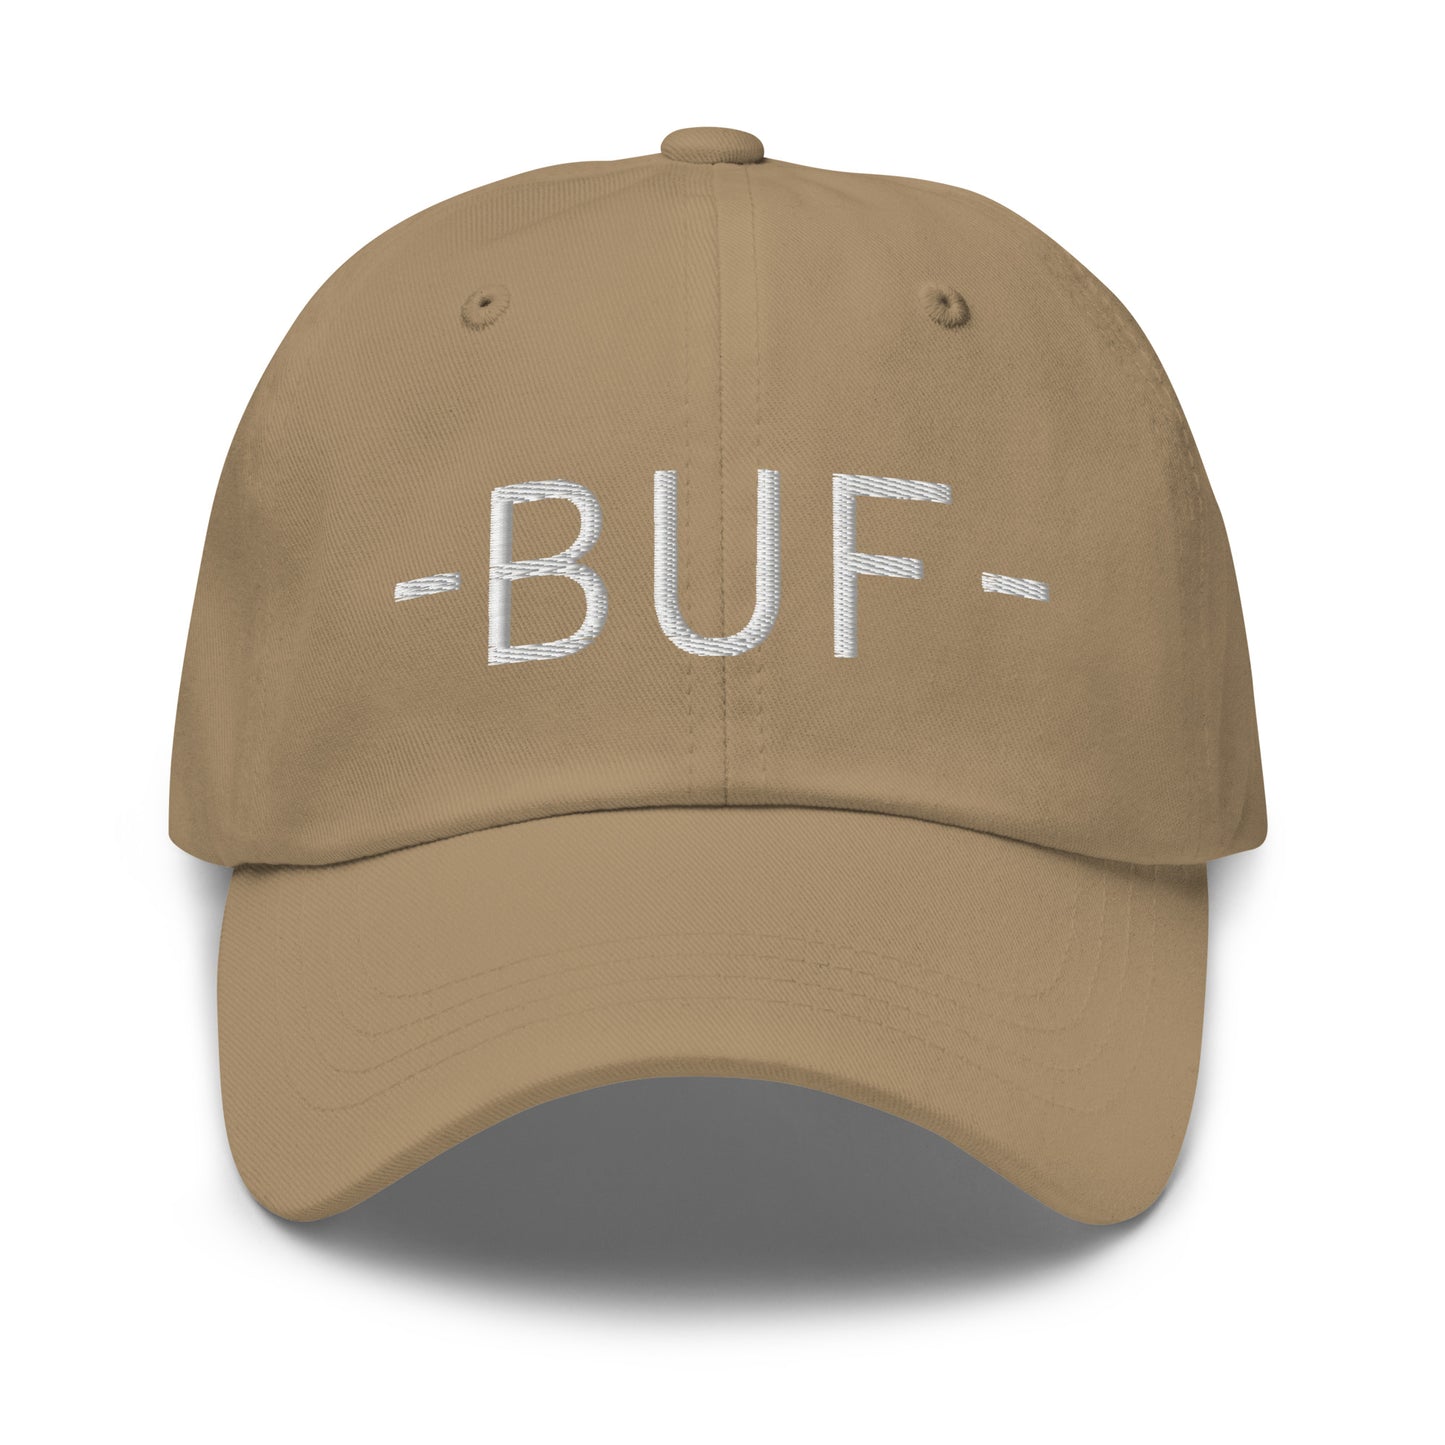 Souvenir Baseball Cap - White • BUF Buffalo • YHM Designs - Image 21